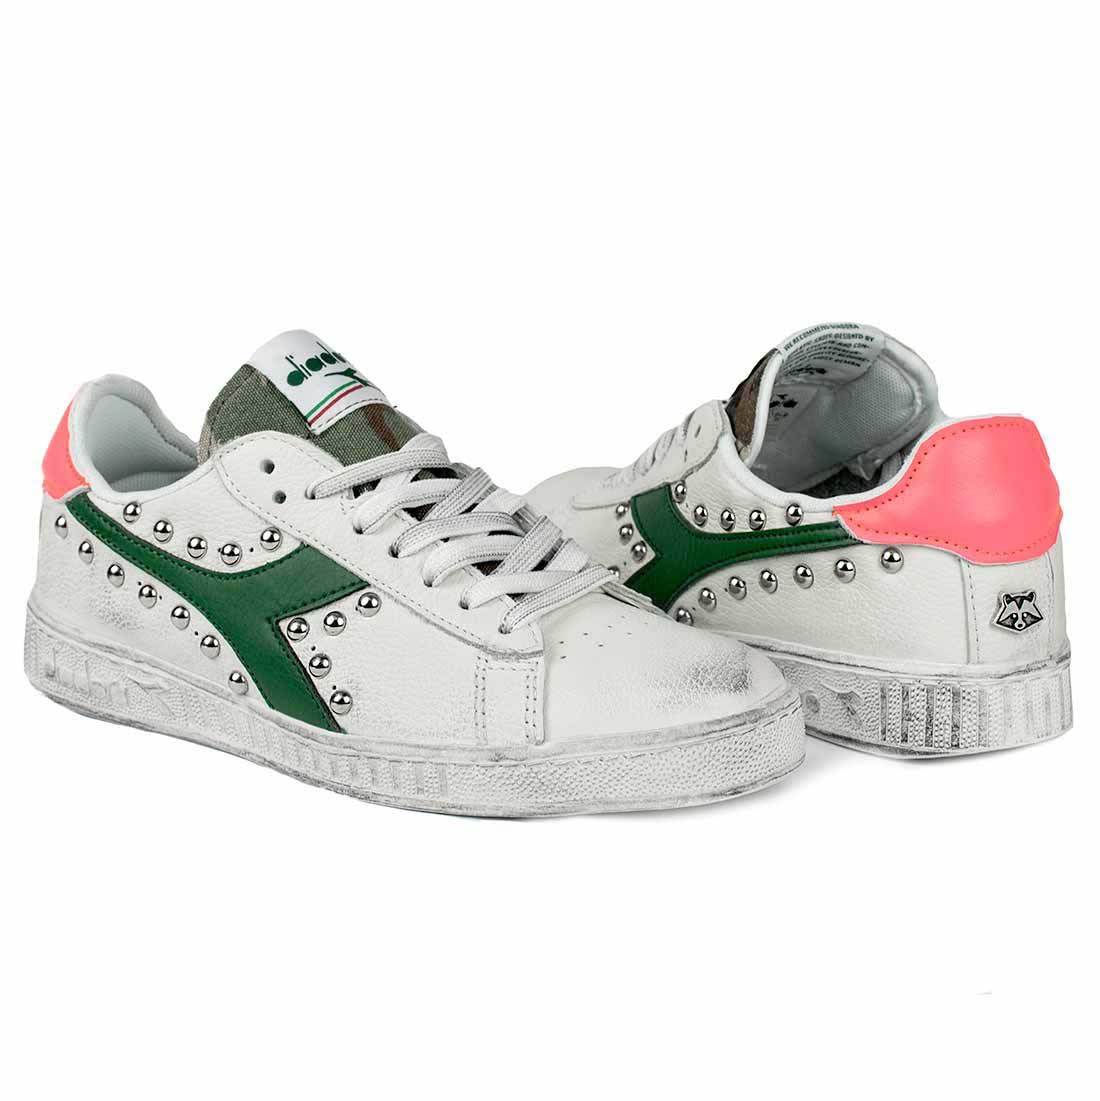 custom sneakers verde camo militare dettagli fucsia con borchie